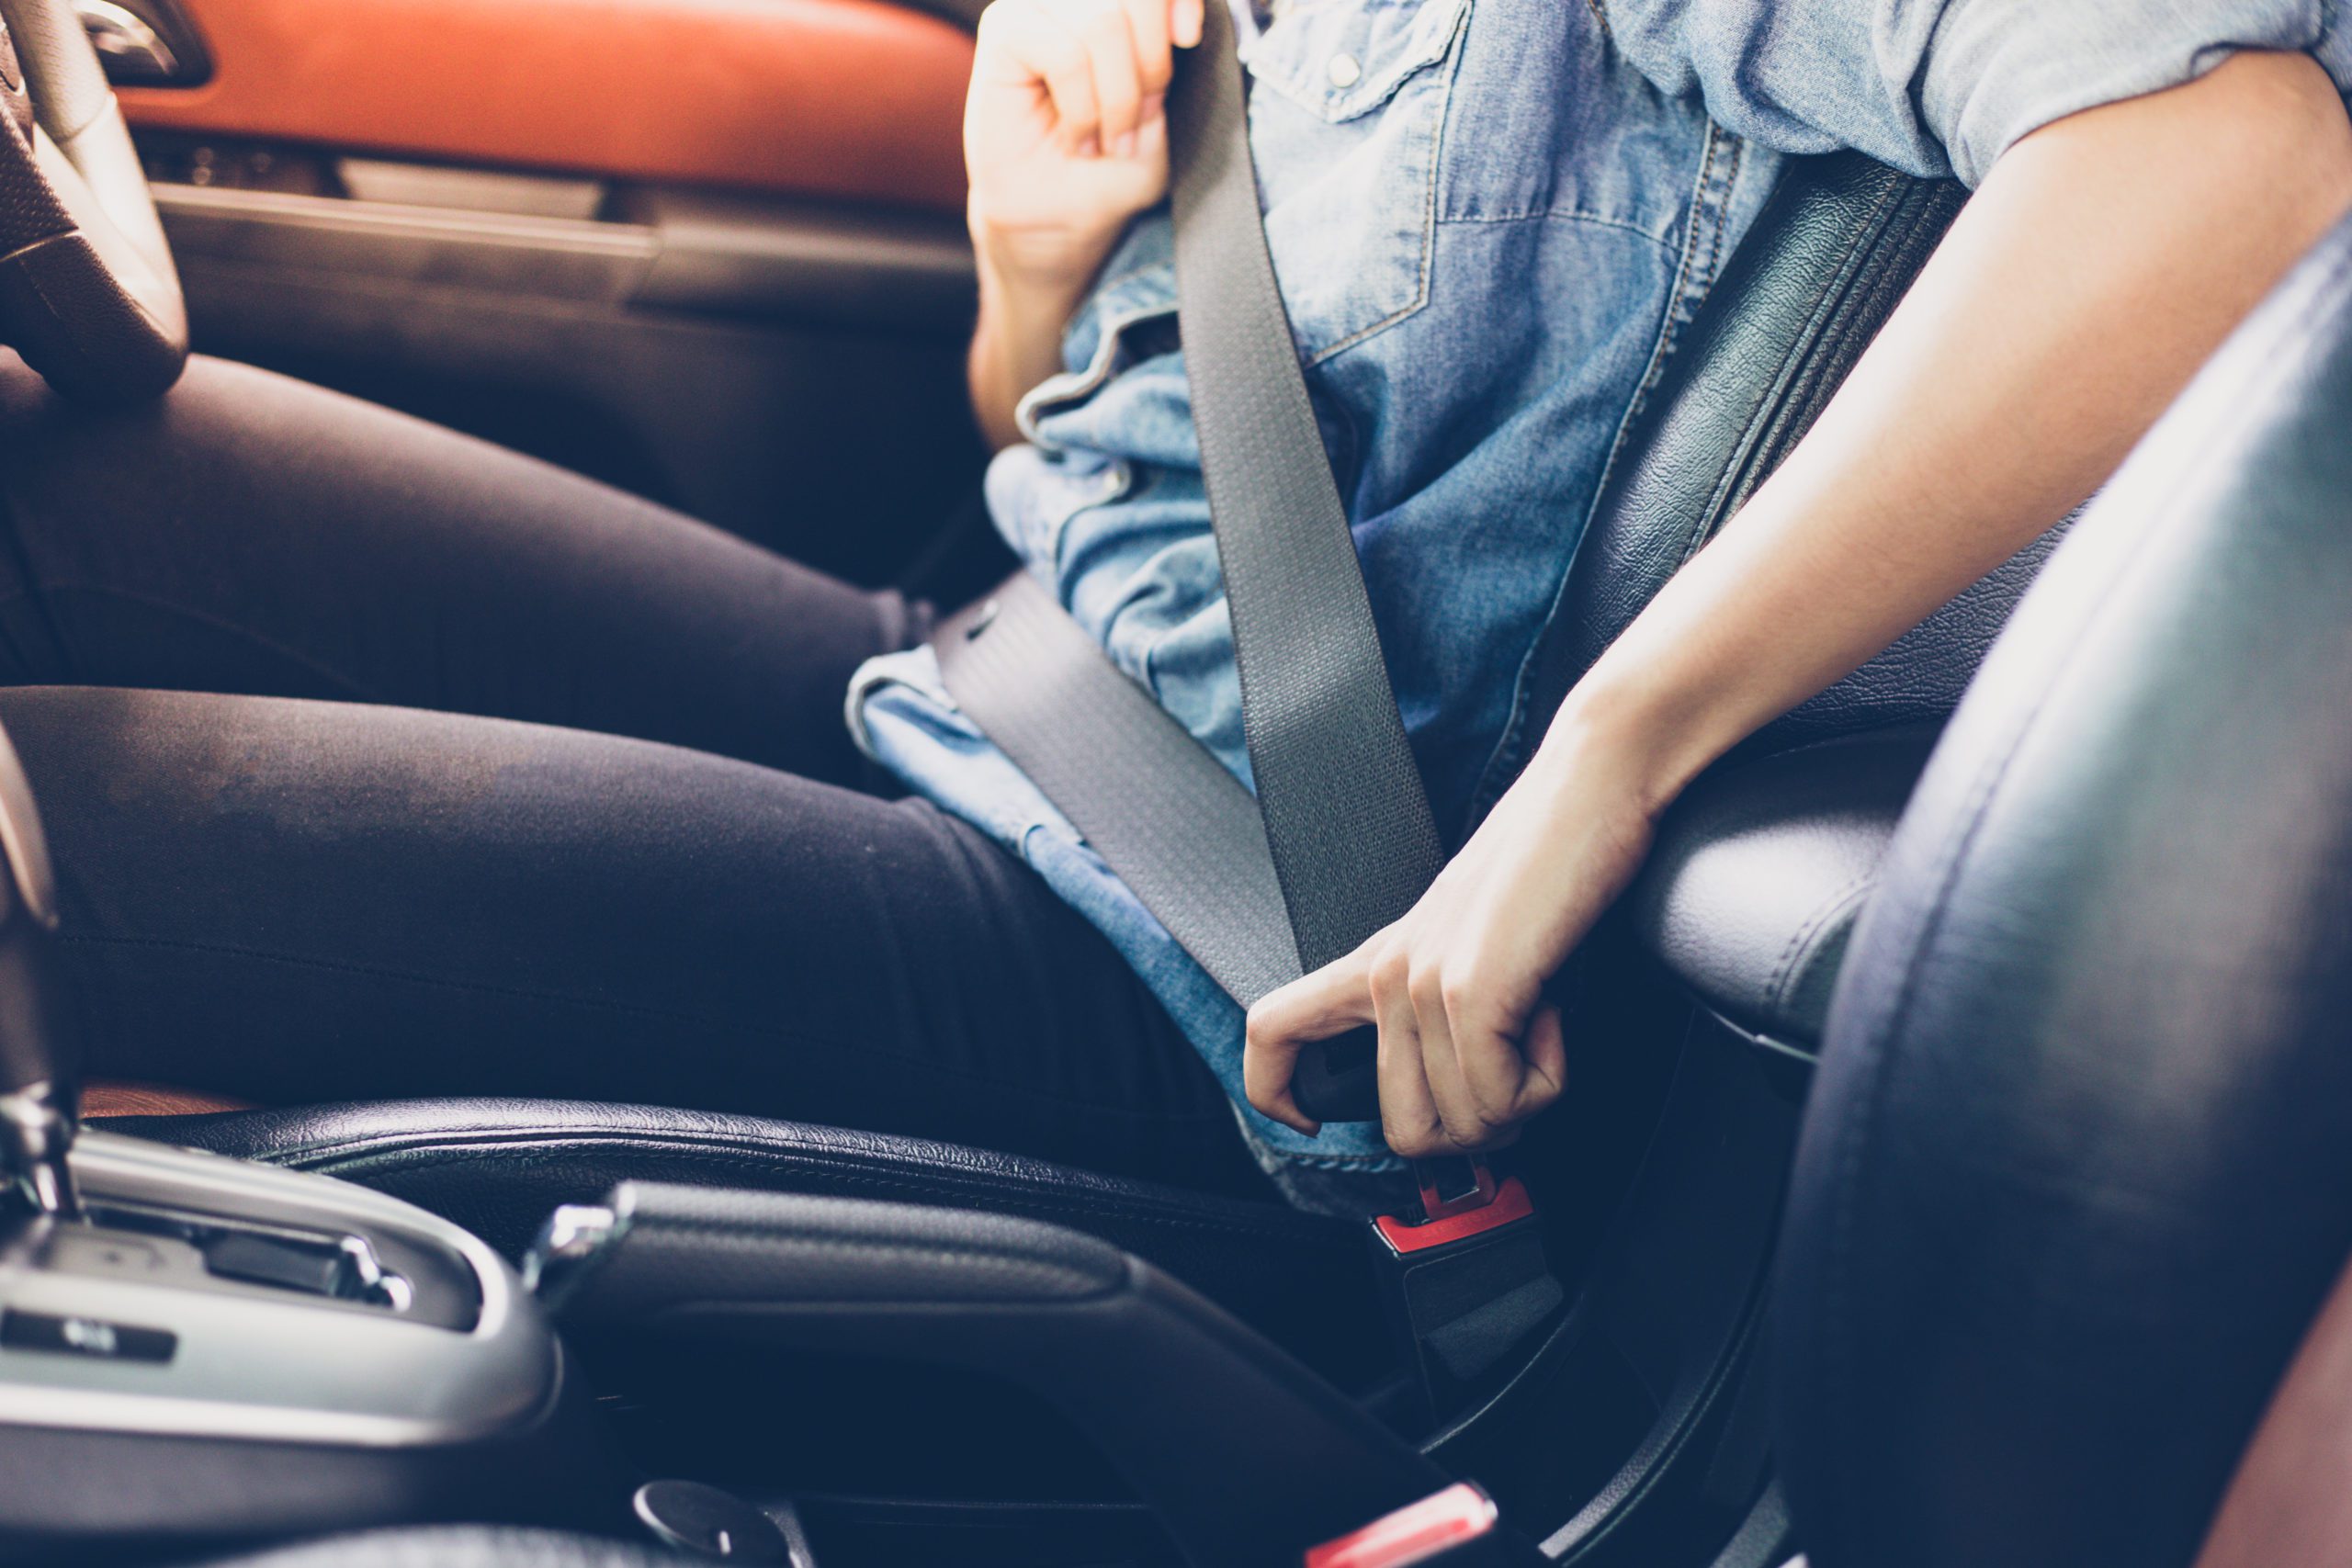 Безопасность в машине на заднем сиденье. Seat Belt. Ремень безопасности для автомобиля. Ремень на заднем сидении. Пристегивание ремня безопасности.